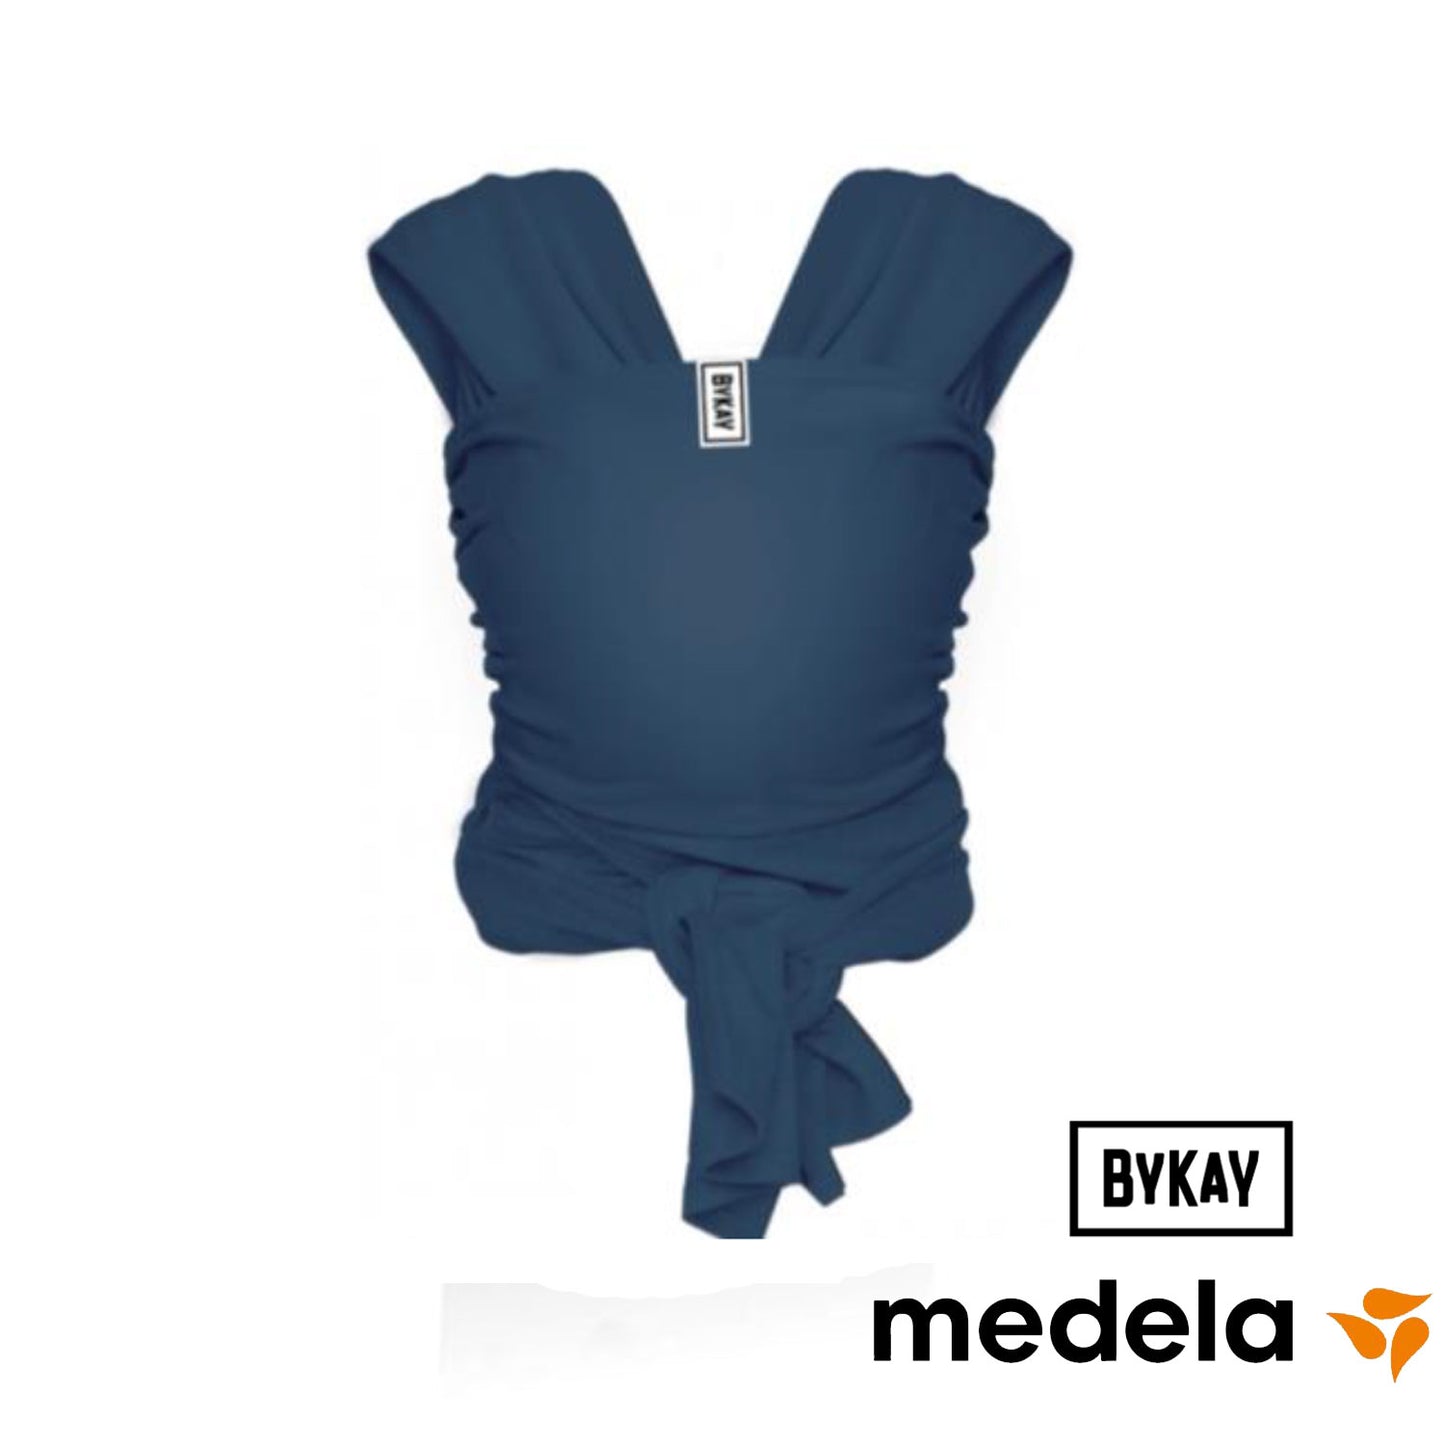 Medela - Bykay Baby Carrier